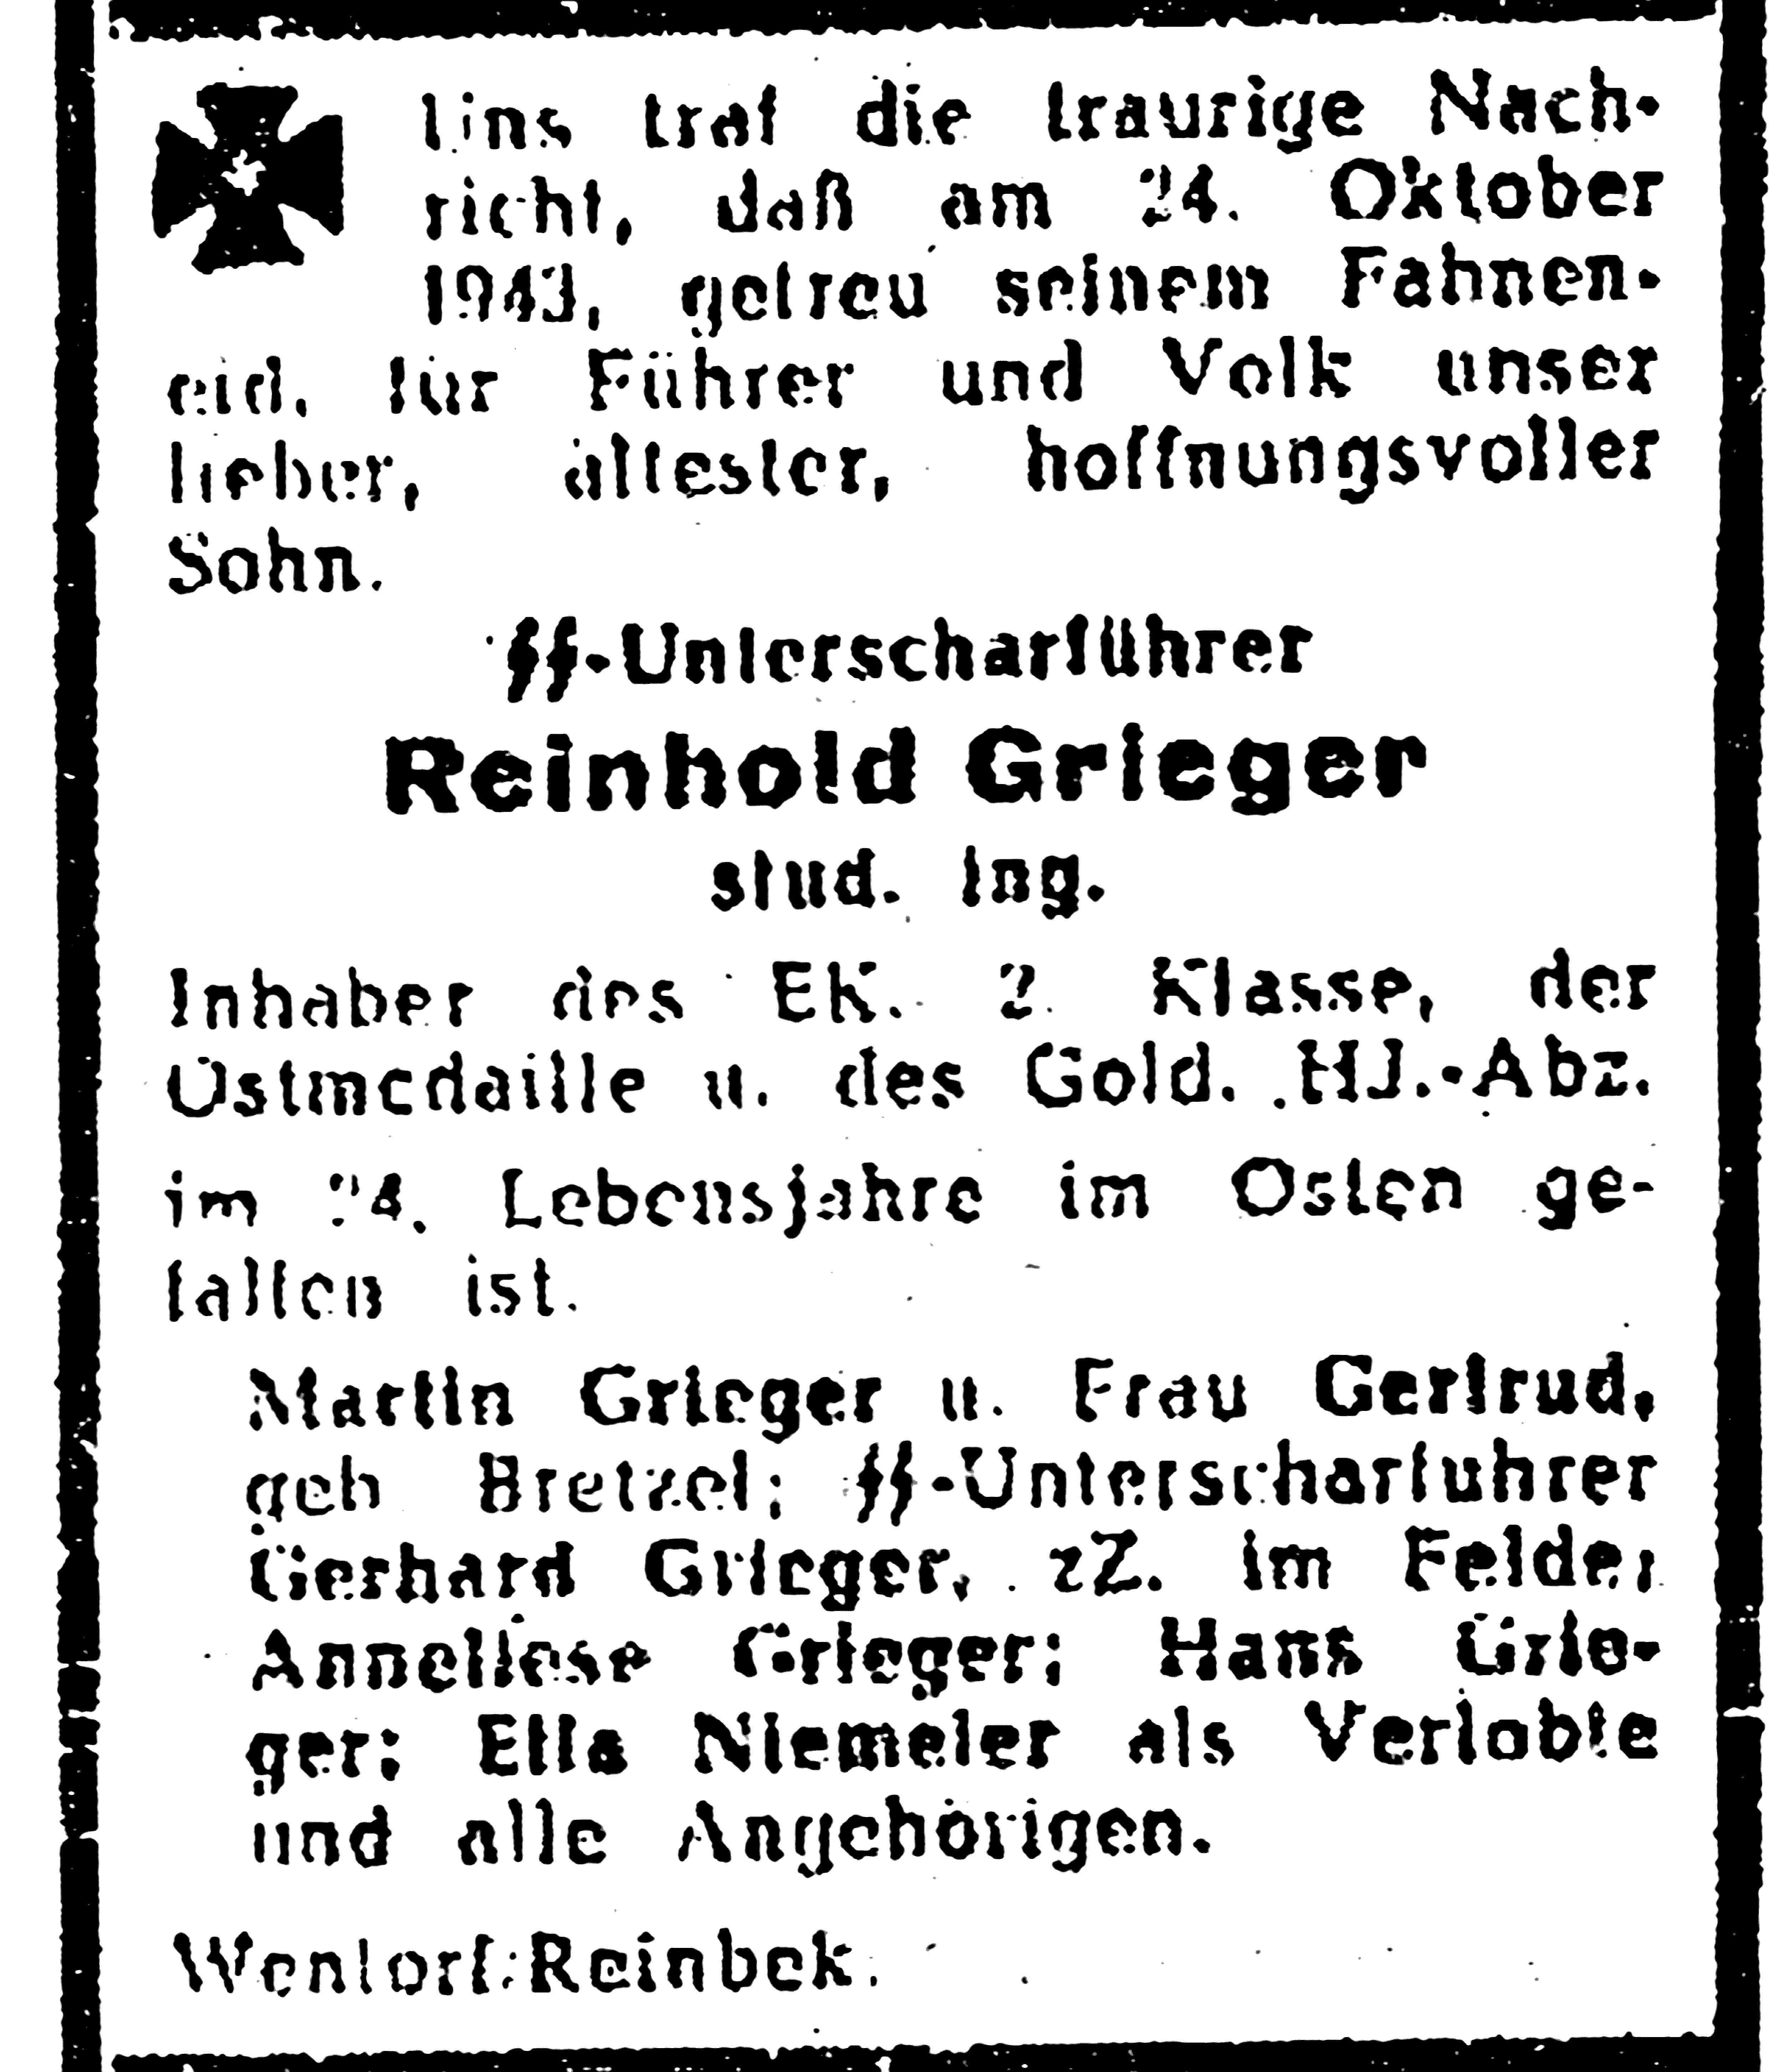 Trauernzeige für SS-Unterscharführer Reinhold Grieger. Aus: Das Schwarze Korps, Jg. 10, Nr. 16; 20.4.1944, S. 8.